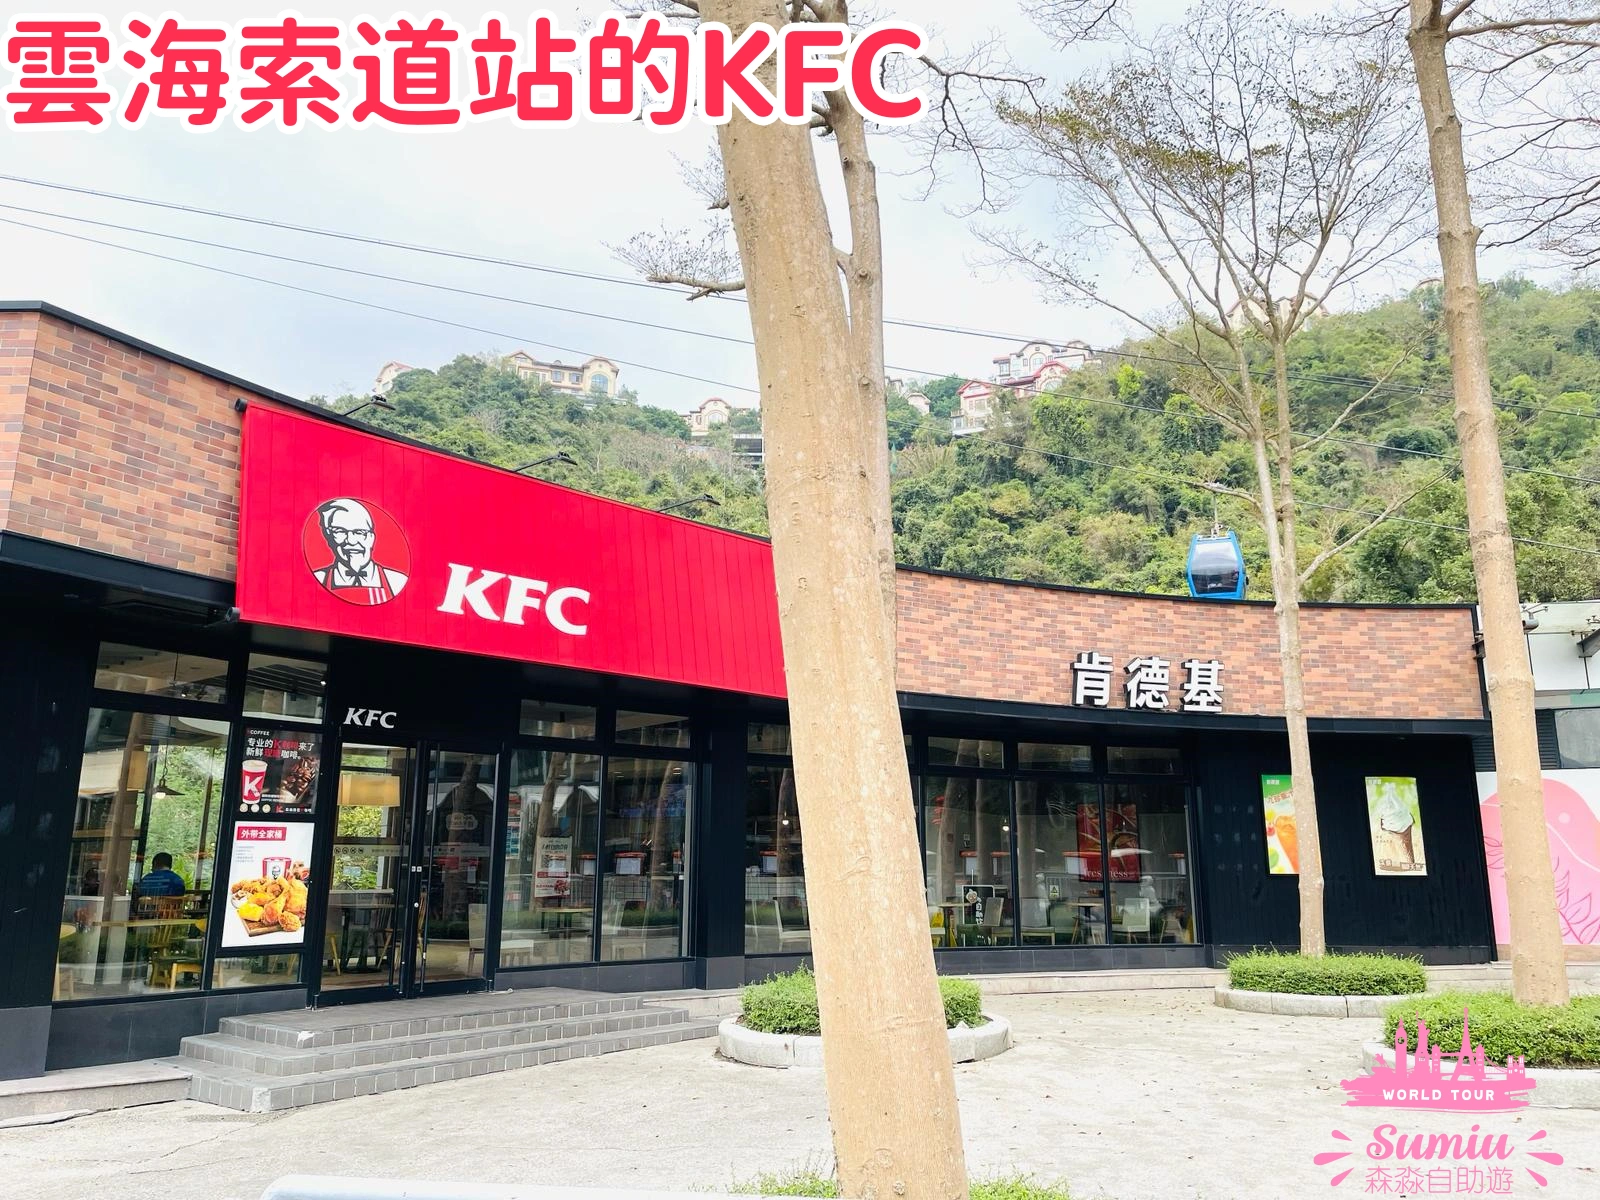 雲海索道站的KFC